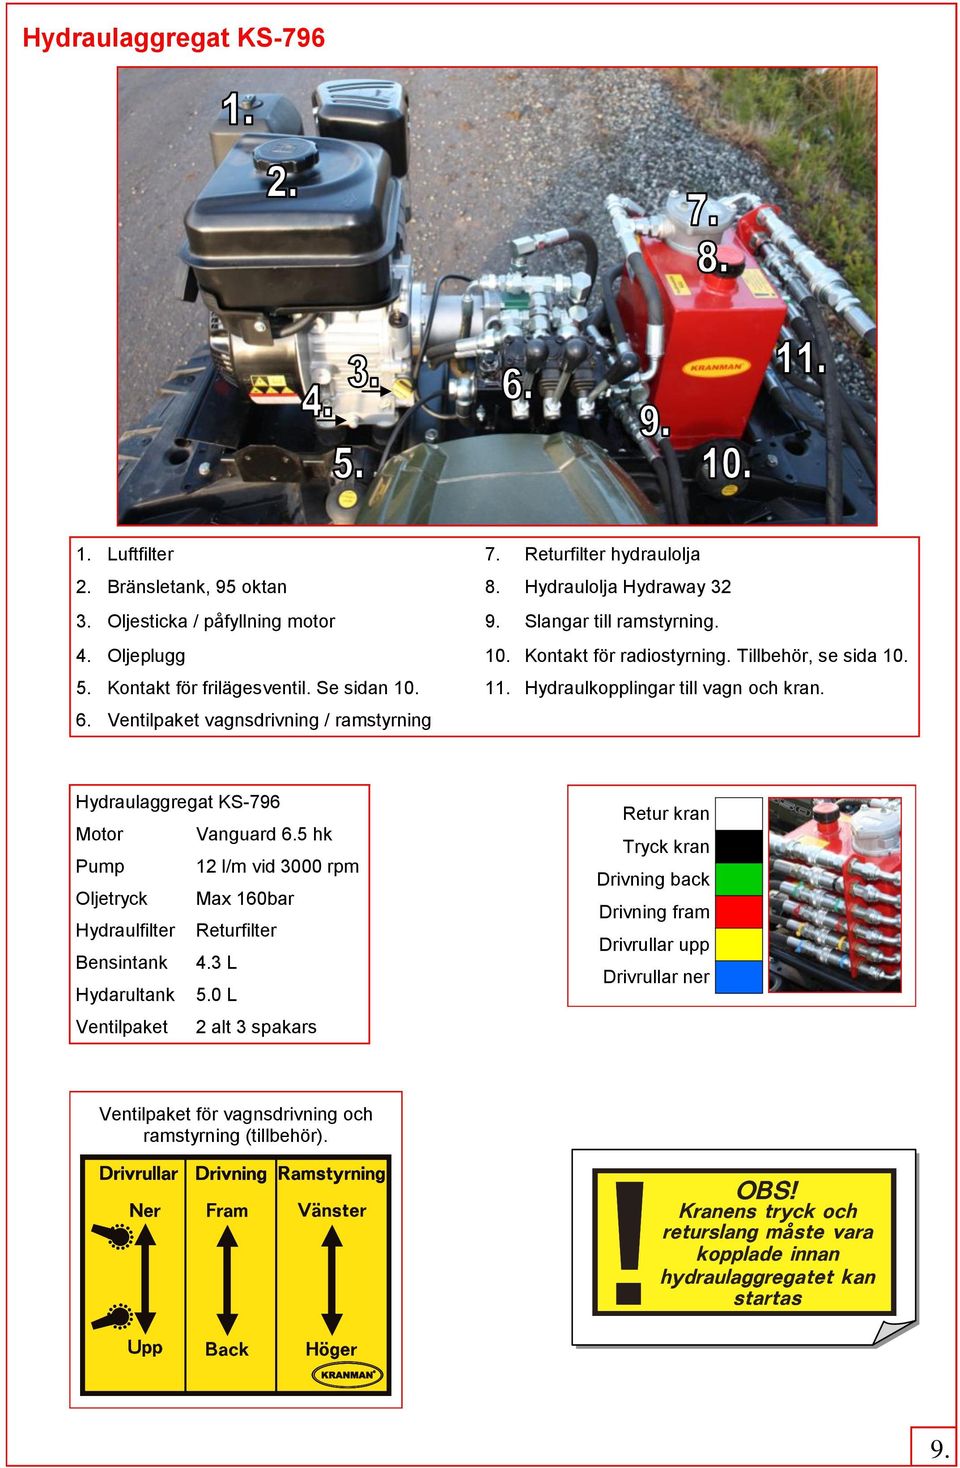 Hydraulkopplingar till vagn och kran. 6. Ventilpaket vagnsdrivning / ramstyrning Hydraulaggregat KS-796 Motor Vanguard 6.